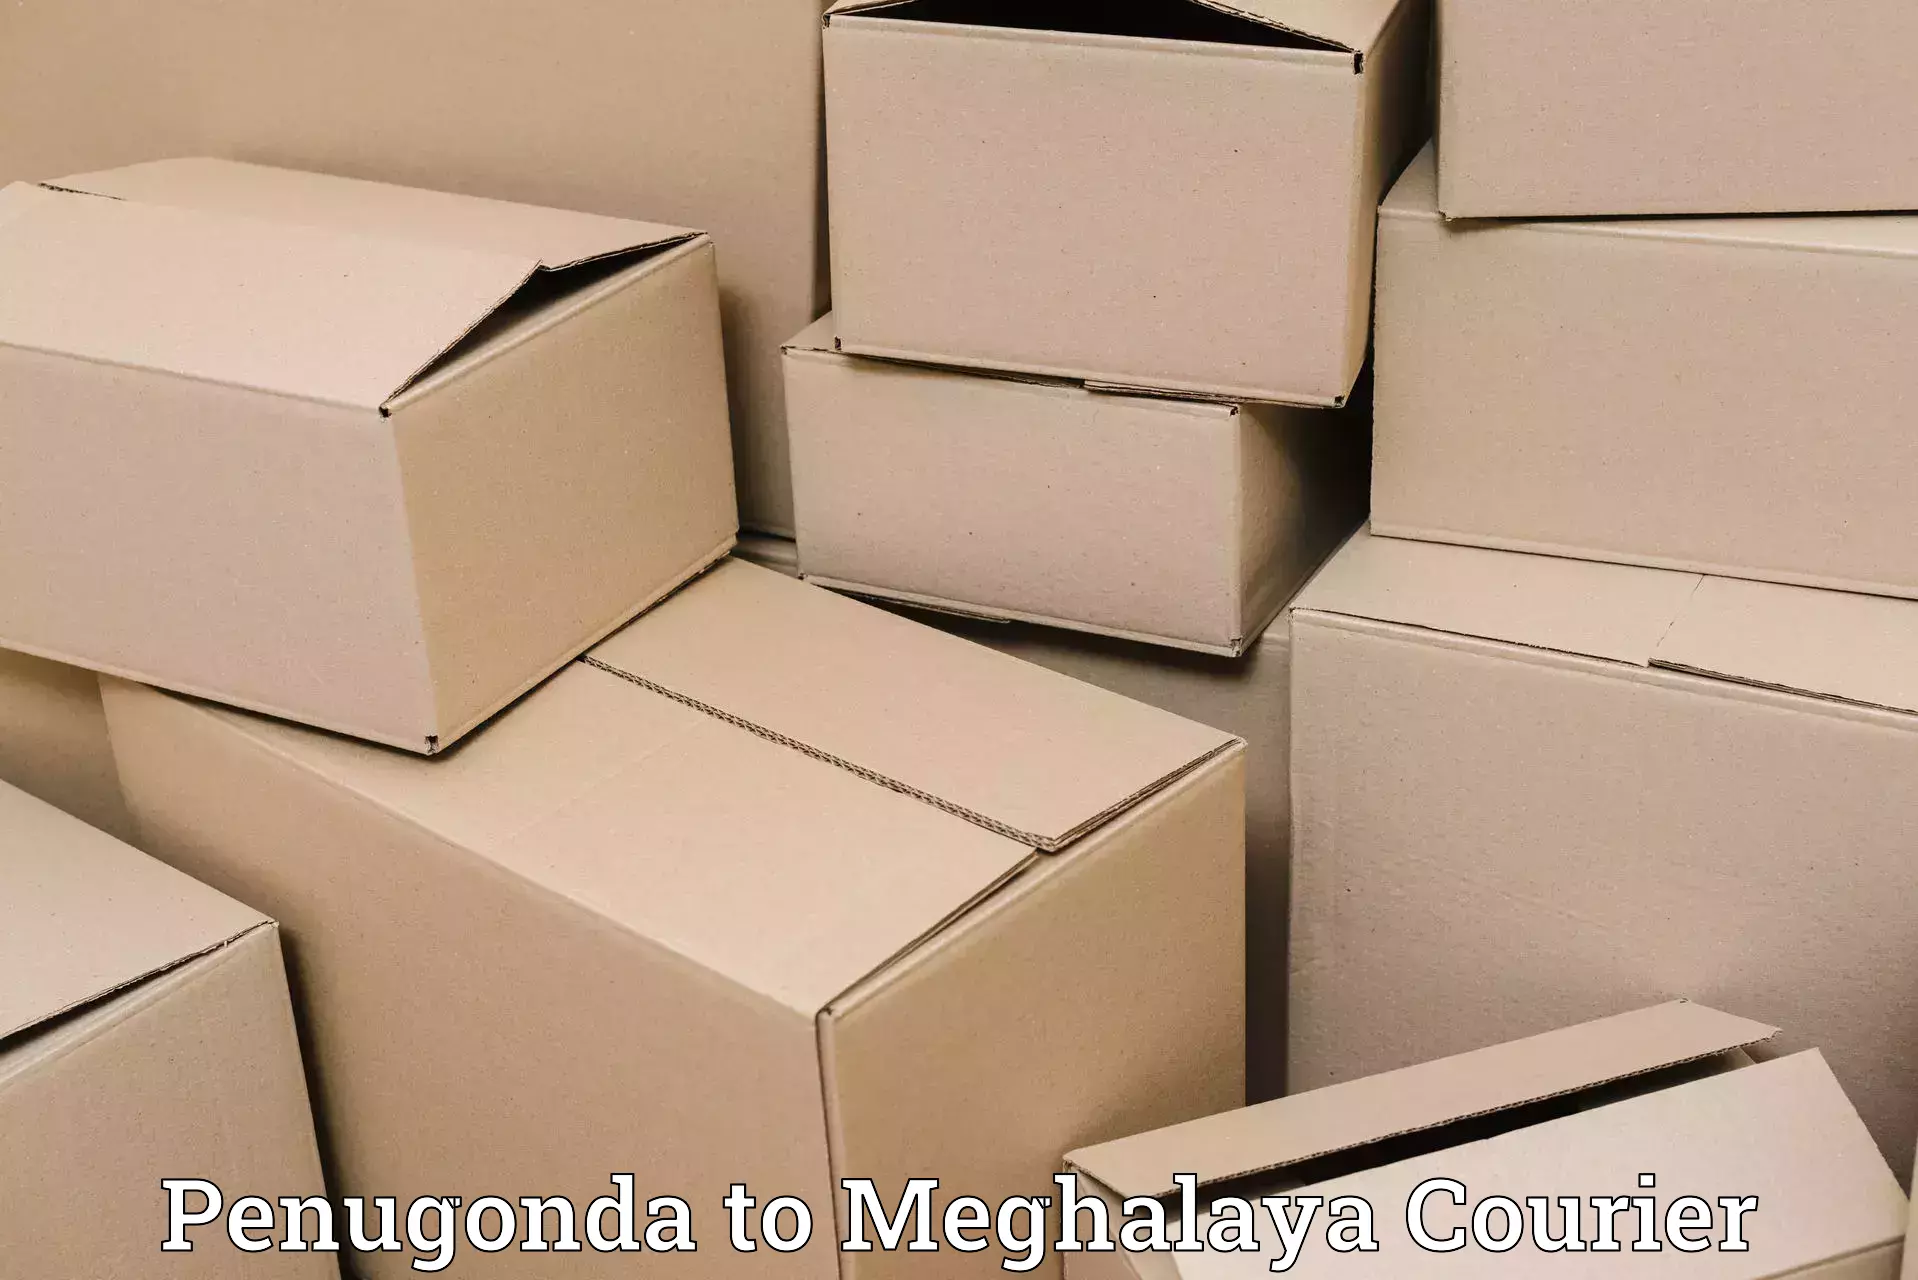 Online shipping calculator Penugonda to Tikrikilla